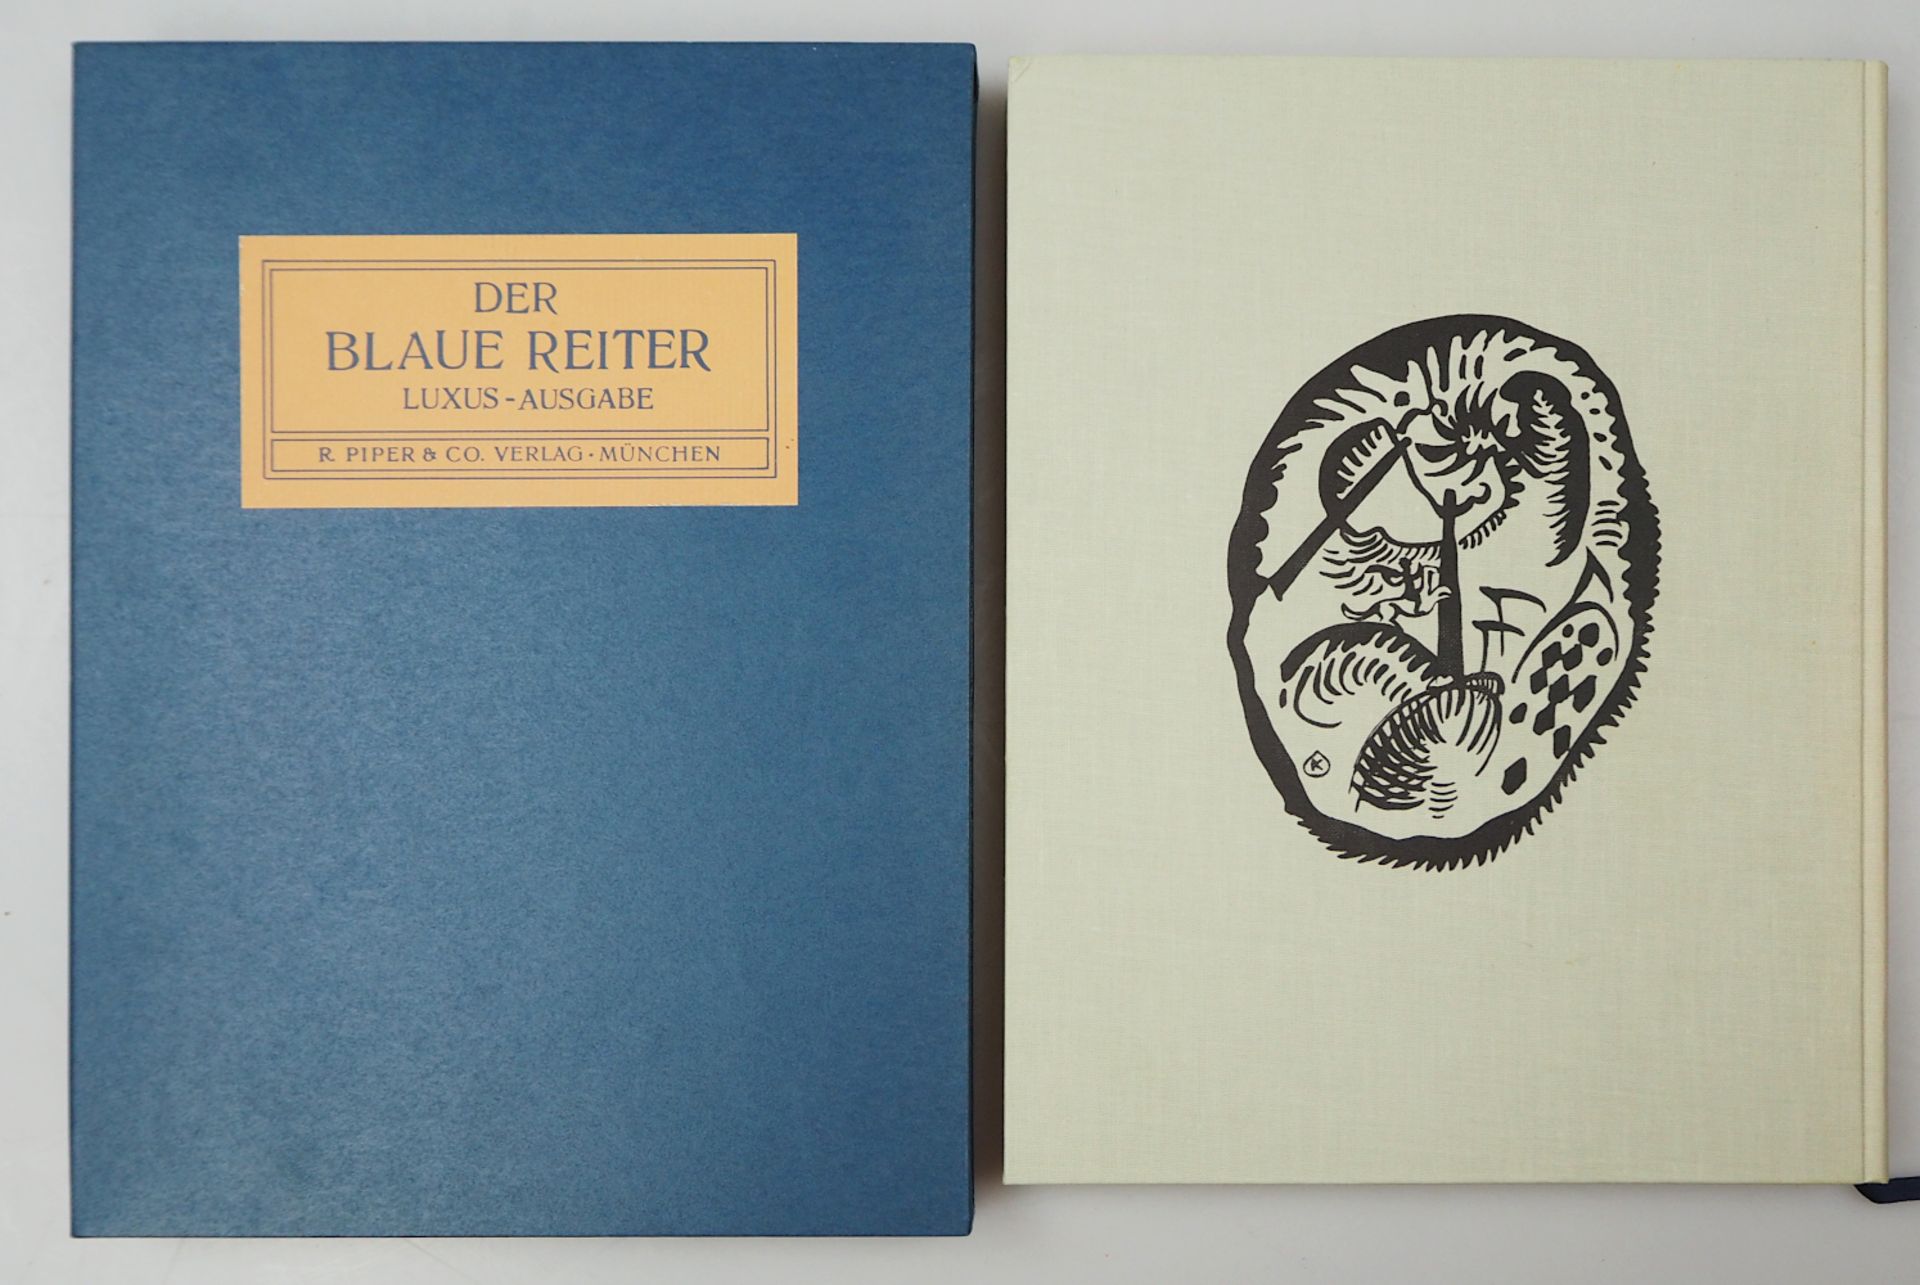 1 limitierte Luxus-Ausgabe "Der Blaue Reiter" hg. v. Wassily KANDINSKY und Franz MARC, München 1976 - Bild 2 aus 4